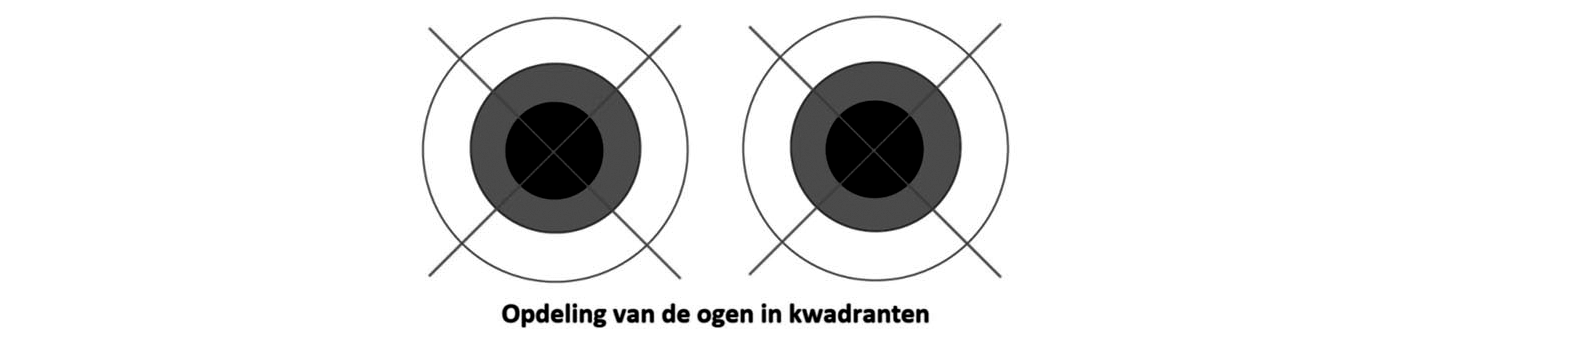 Figuur 3 Opdeling van de ogen in kwadranten